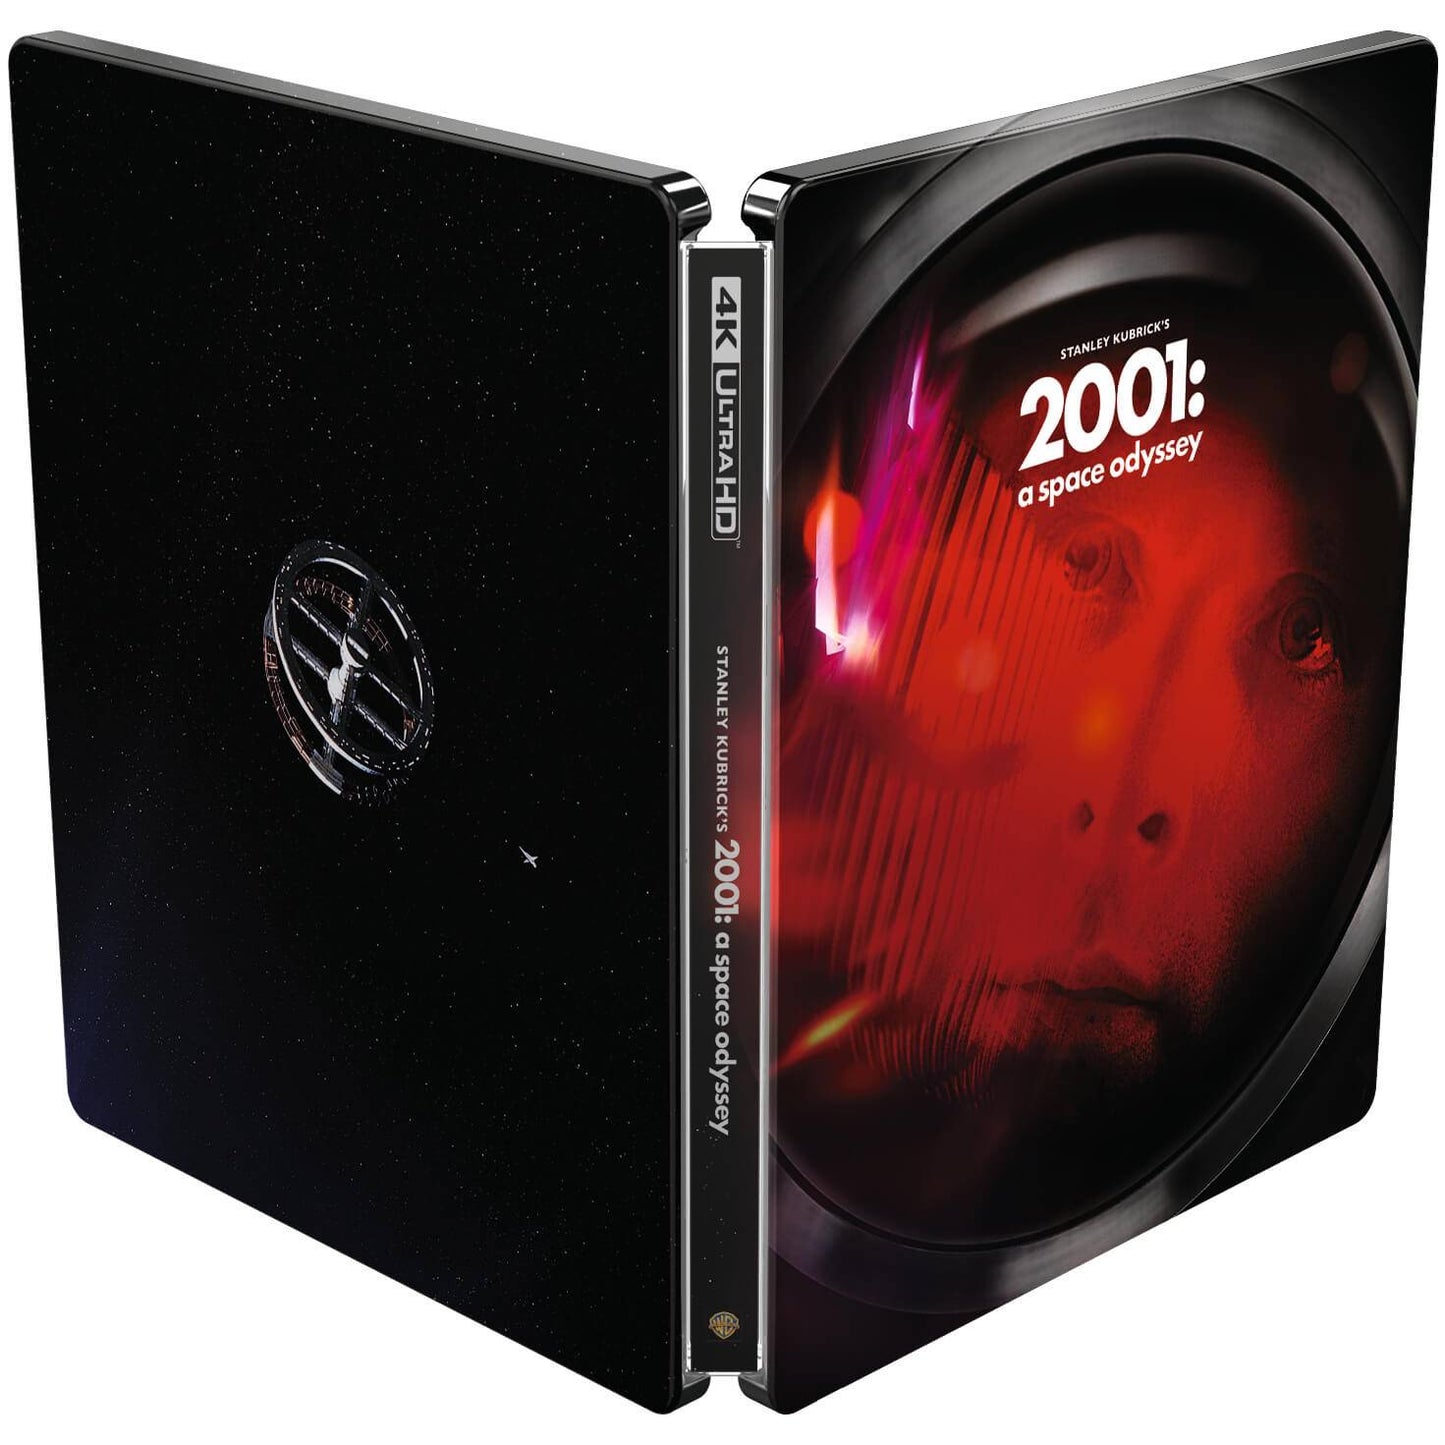 2001 год: Космическая одиссея (русские субтитры) (4K UHD + Blu-ray) Steelbook